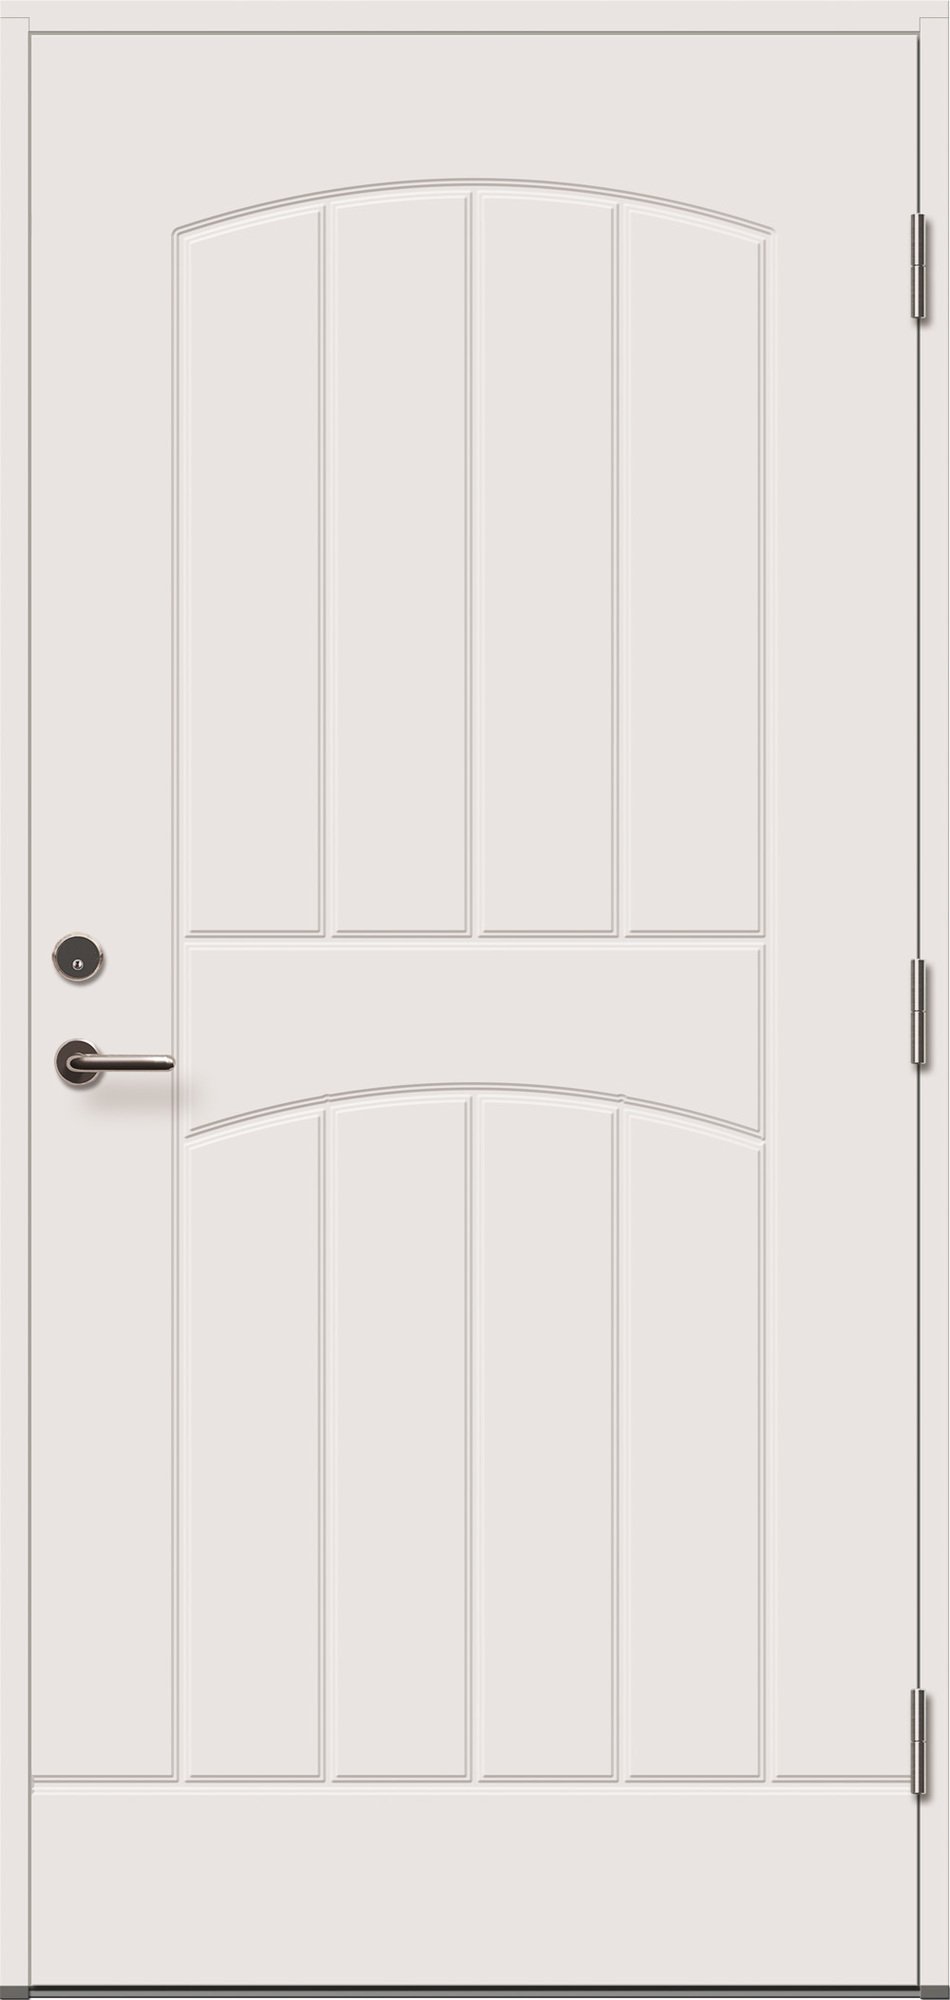 Lauko durys VILJANDI GRACIA, baltos sp., 990 x 2088 mm, dešinė